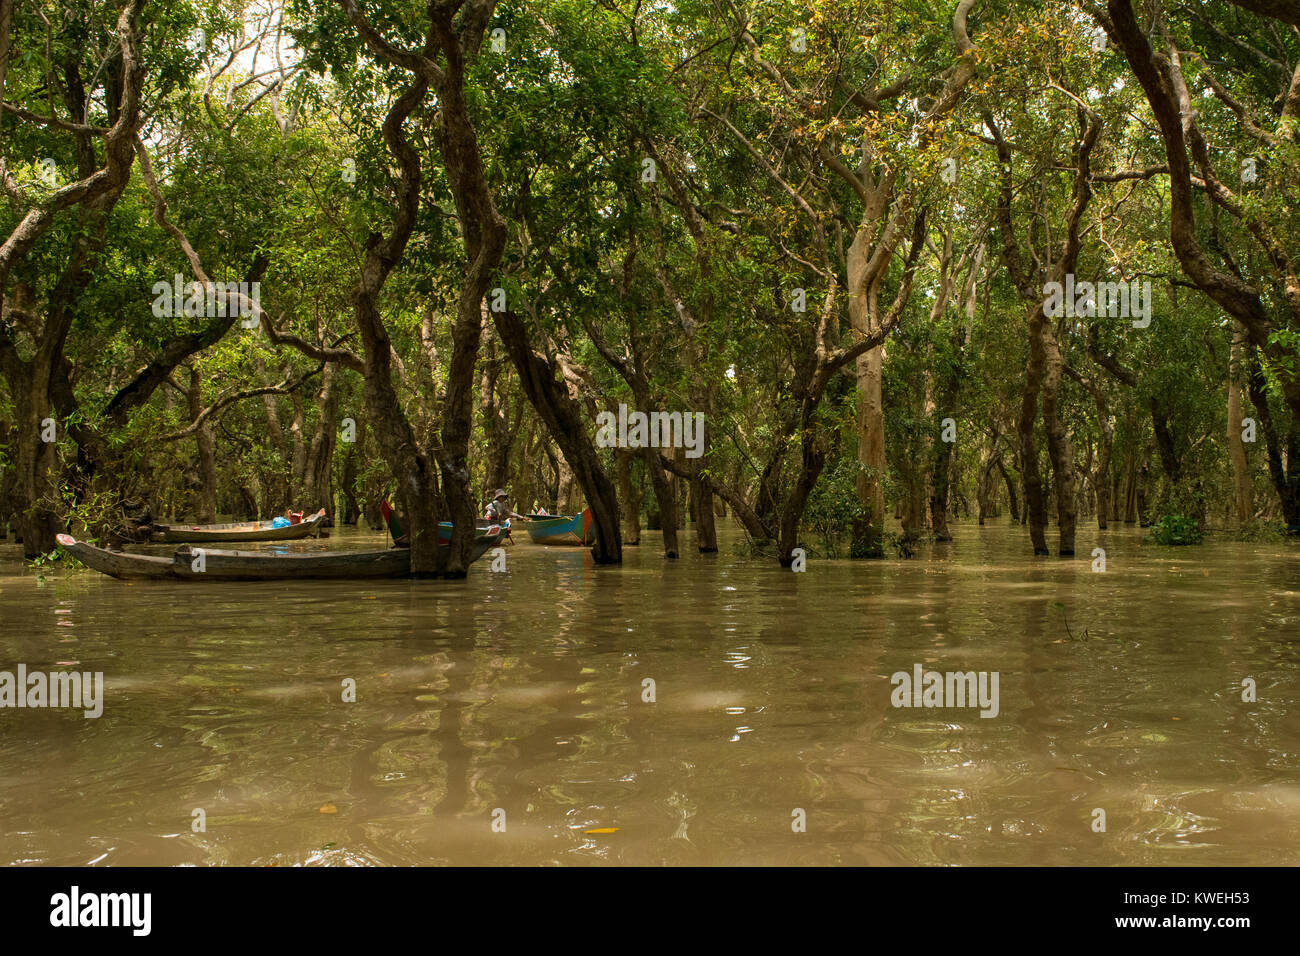 Bateaux amarrés à lié les arbres en forêt flottante noyé inondés avec de l'eau brune la rivière Tonle Sap, Kampong Phluk, Siem Reap, Cambodge, Asie du sud-est Banque D'Images